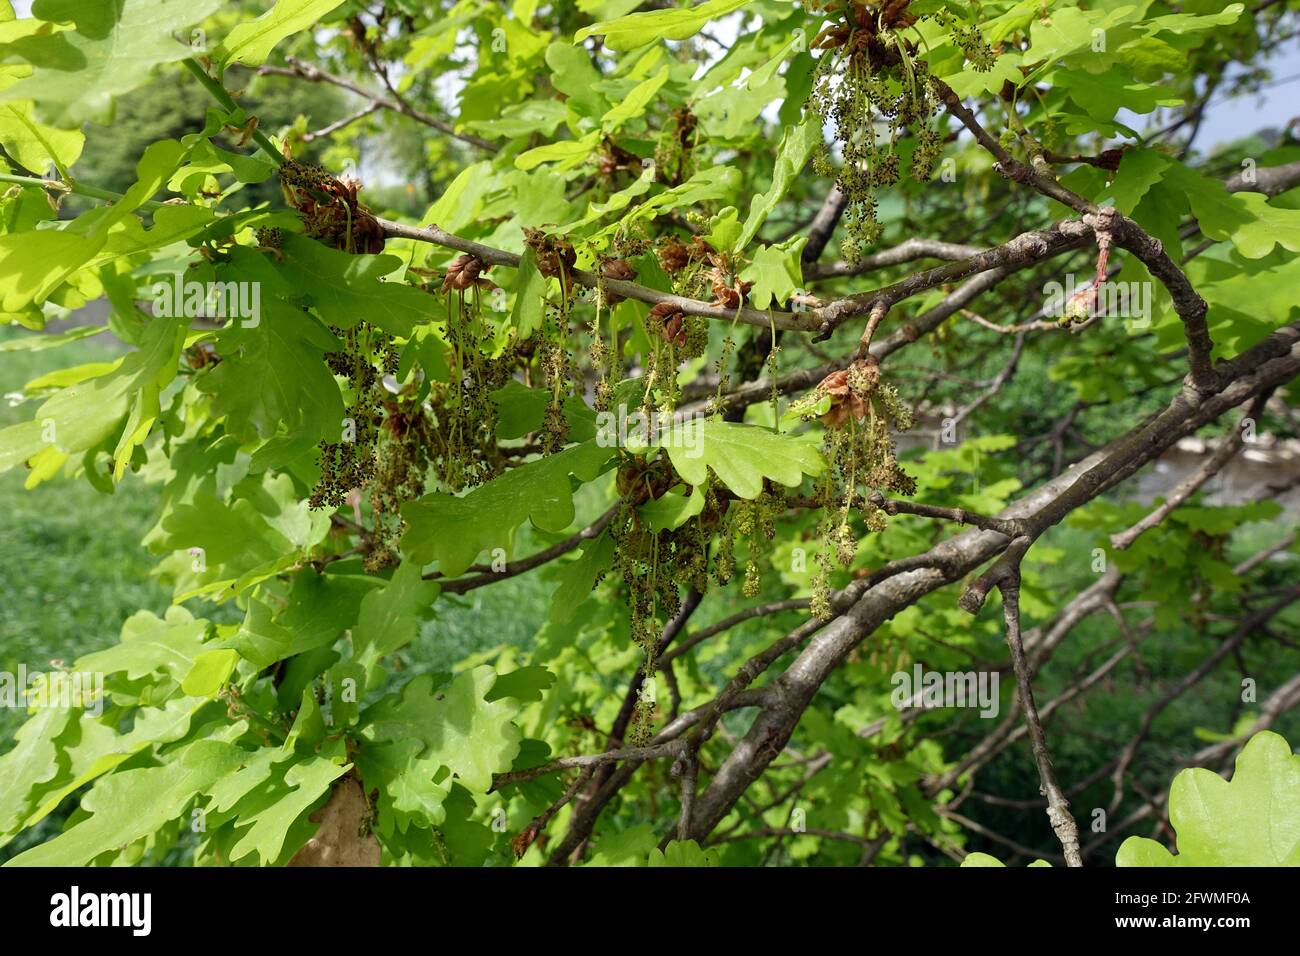 Stieleiche, Sommereiche ou Deutsche Eiche (Quercus robur, Syn. Quercus pedunculata) - männliche Blüte, Weilerswist, Nordrhein-Westfalen, Allemagne Banque D'Images